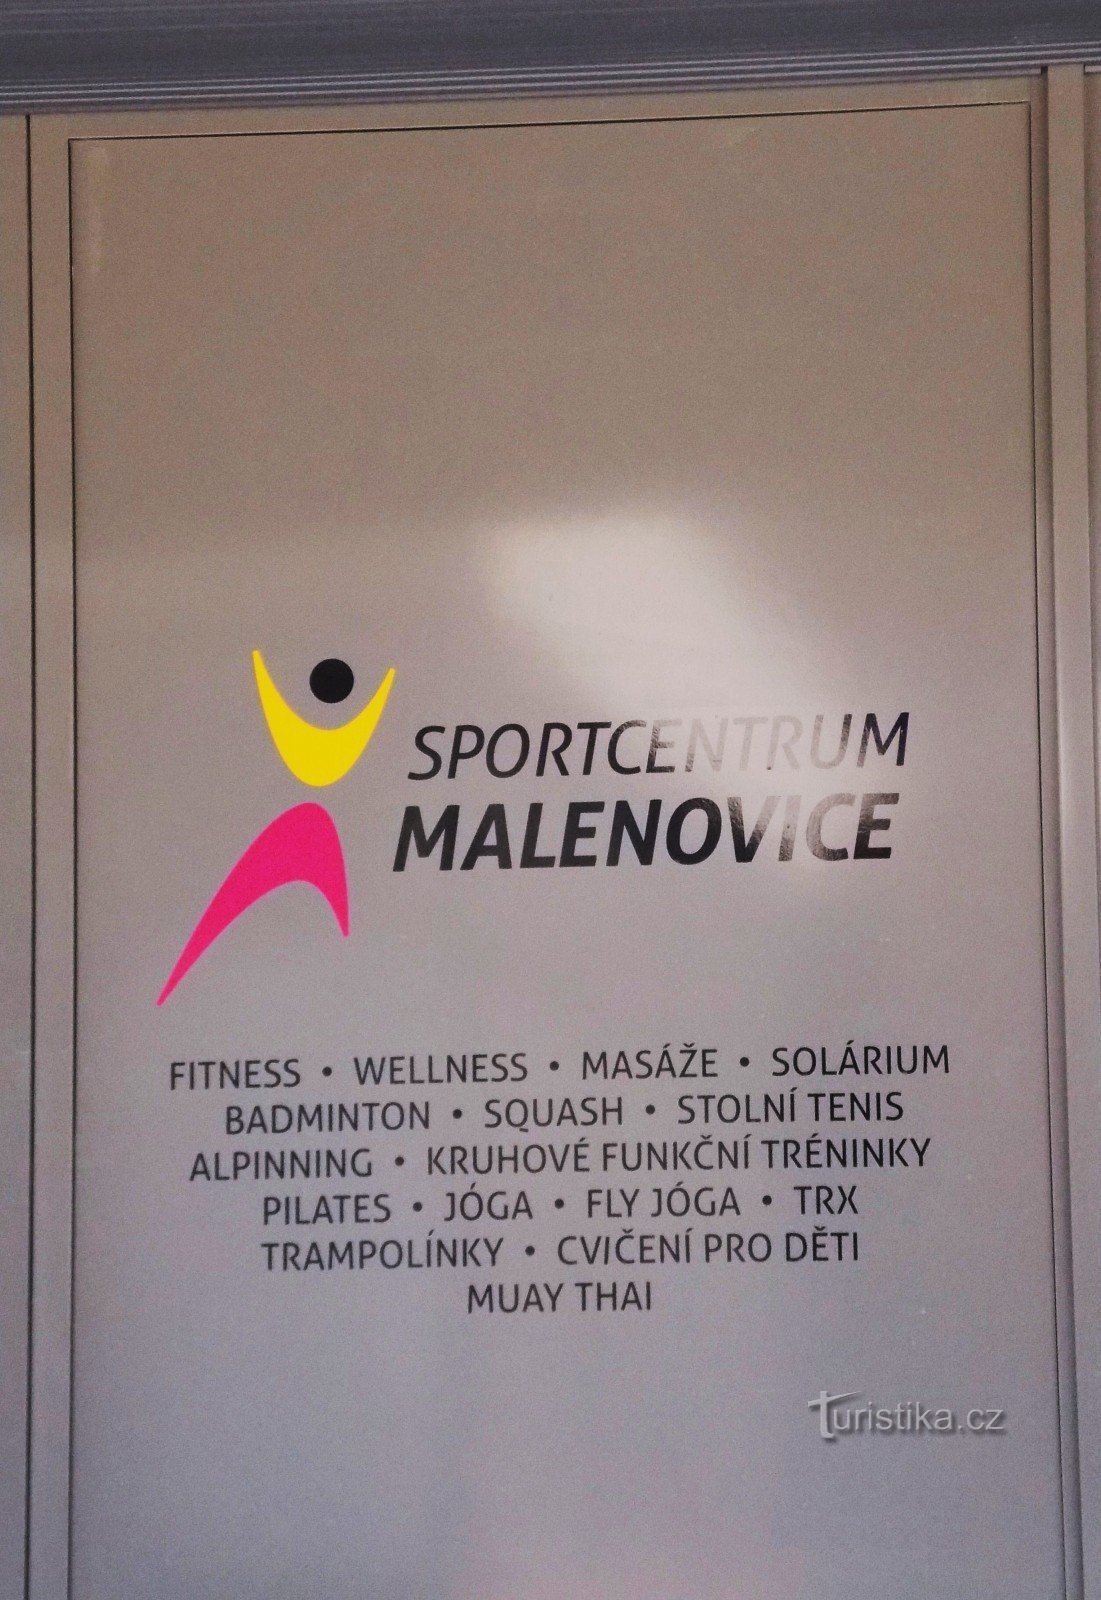 Nuevo polideportivo con restaurante en Malenovice cerca de Zlín